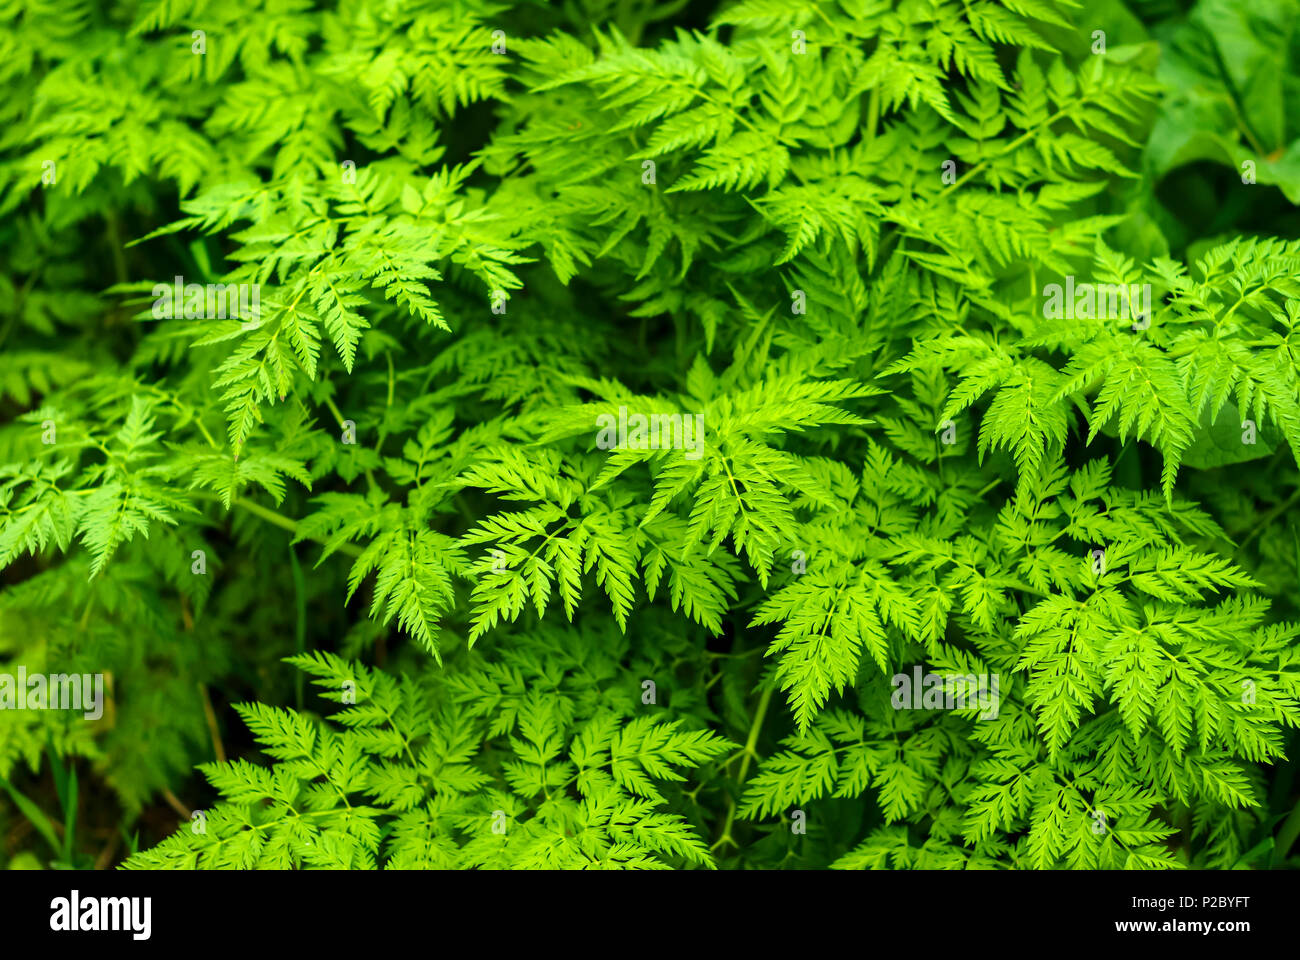 Fondo floral - hojas verdes de chervil сhaerophyllum (alcachofa) Foto de stock